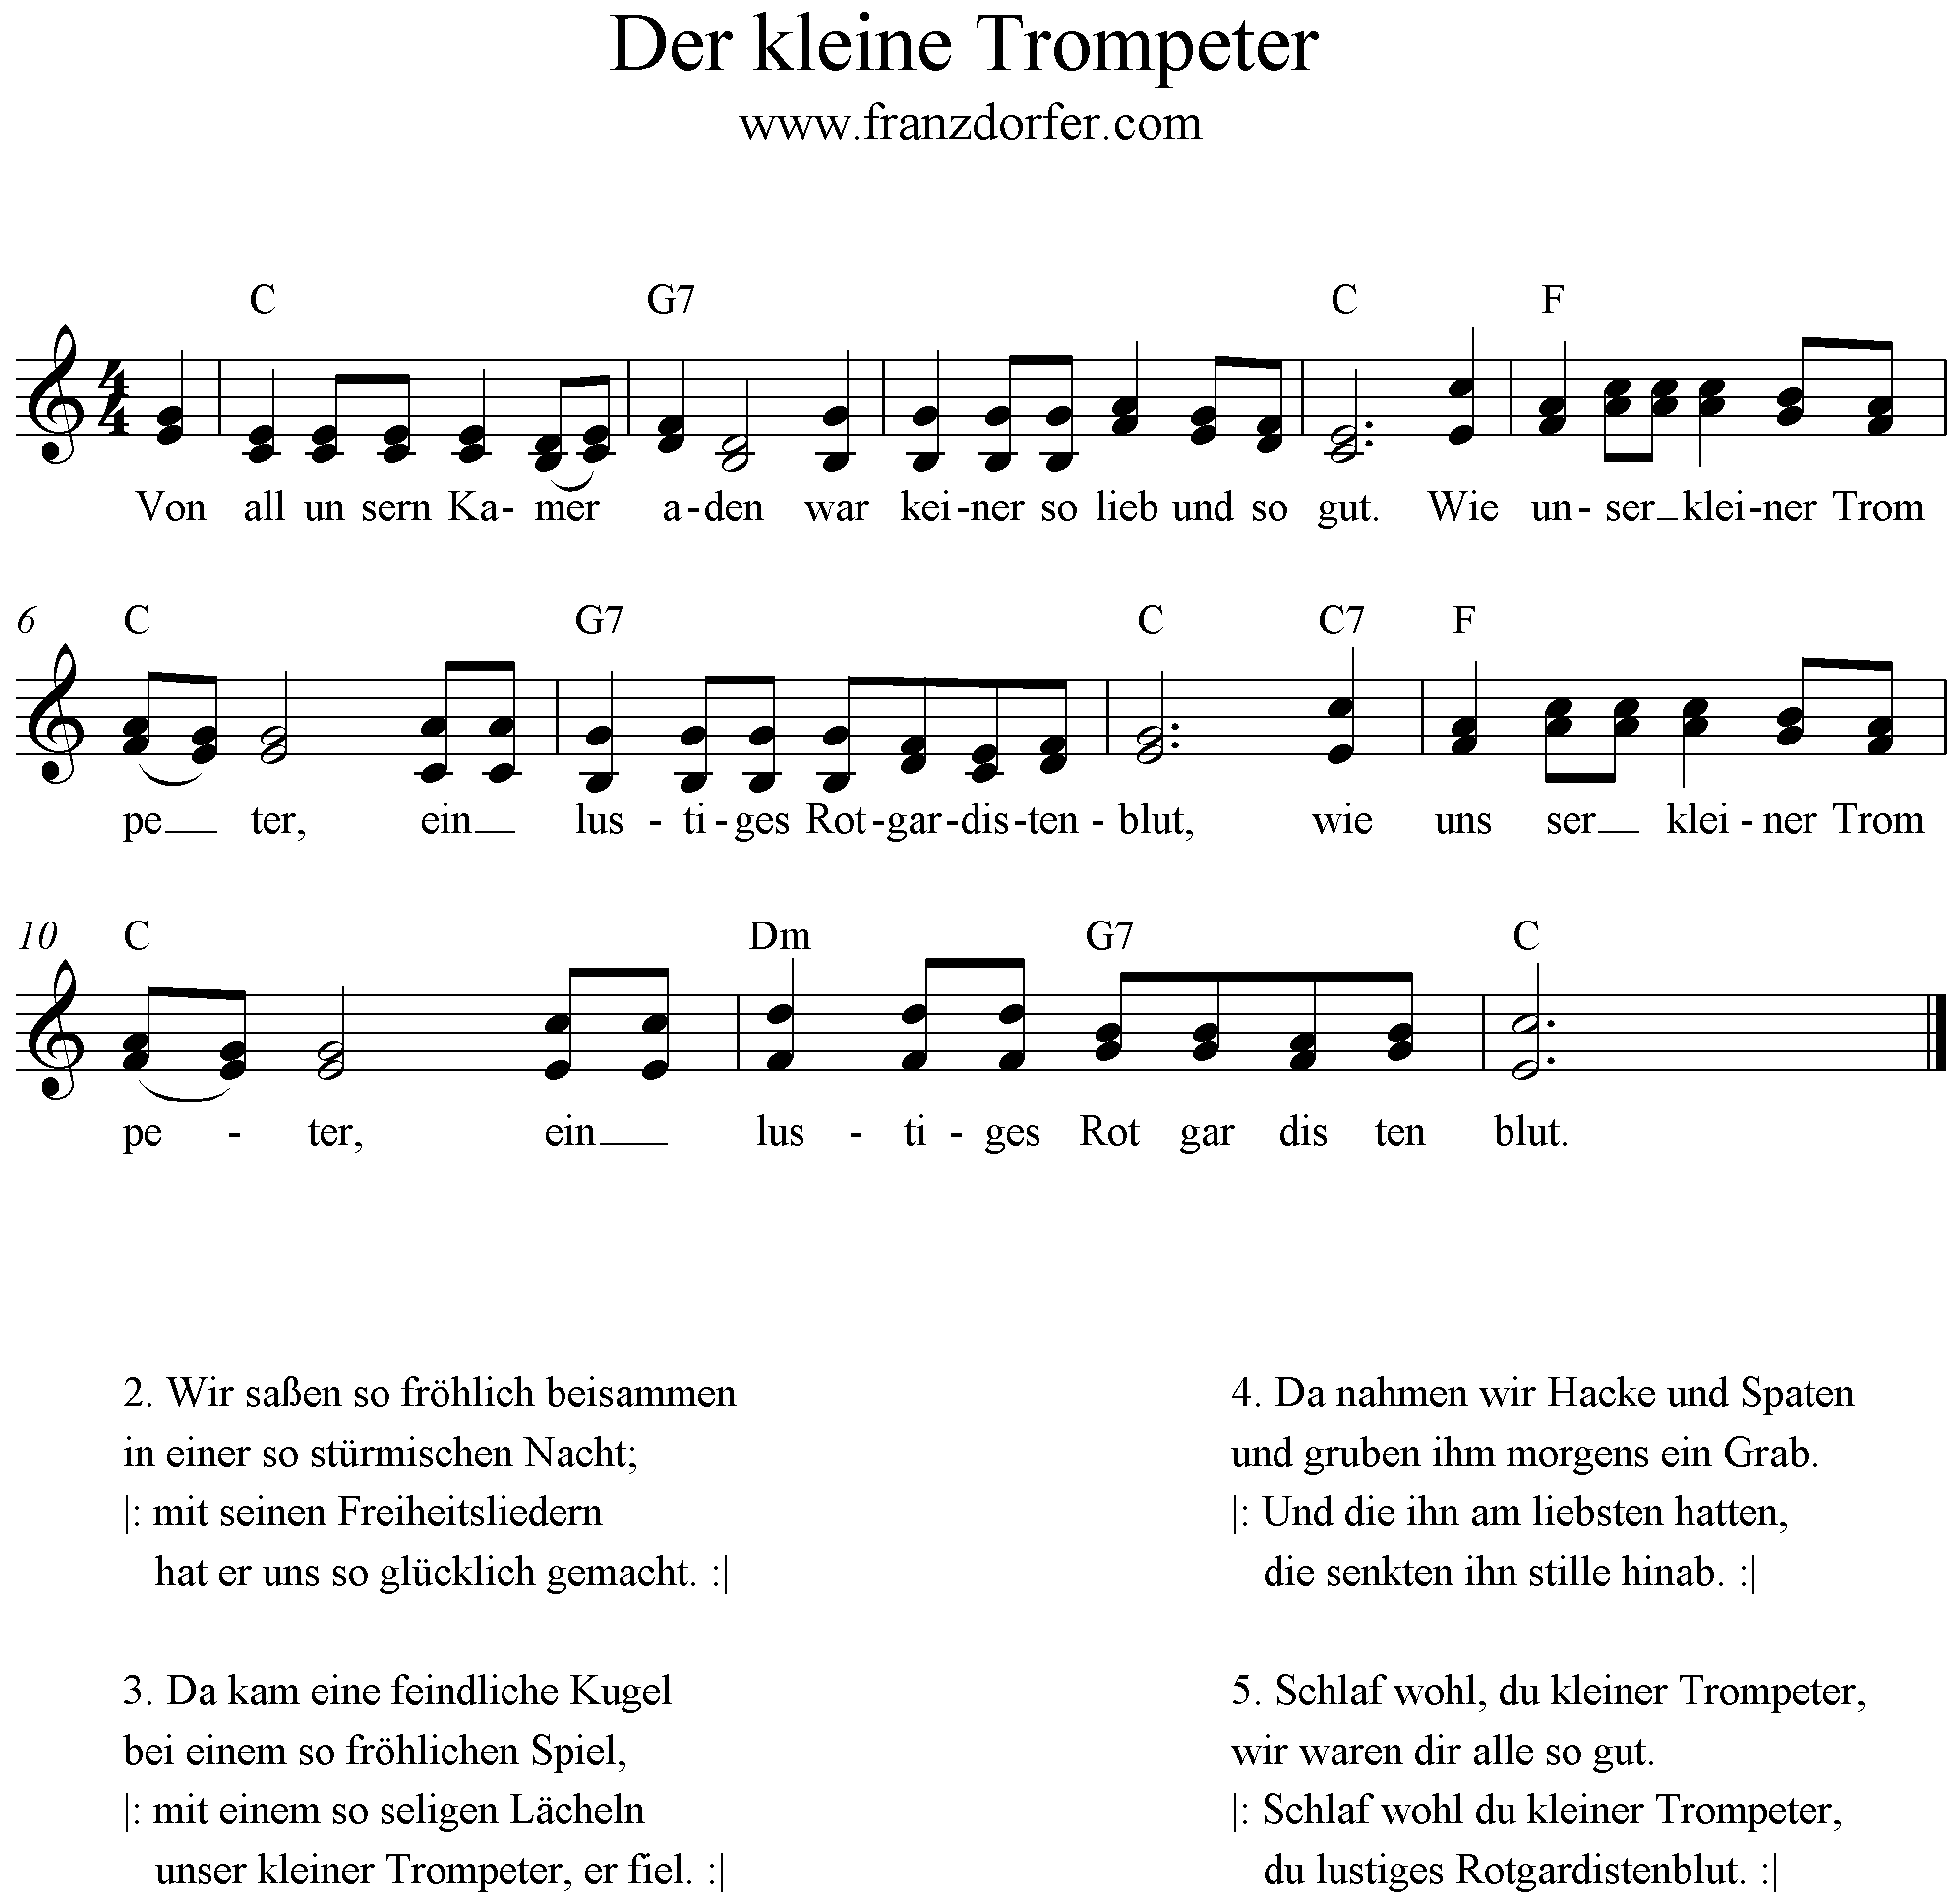 Noten der kleine Trompeter, C-Dur, 2stimmig